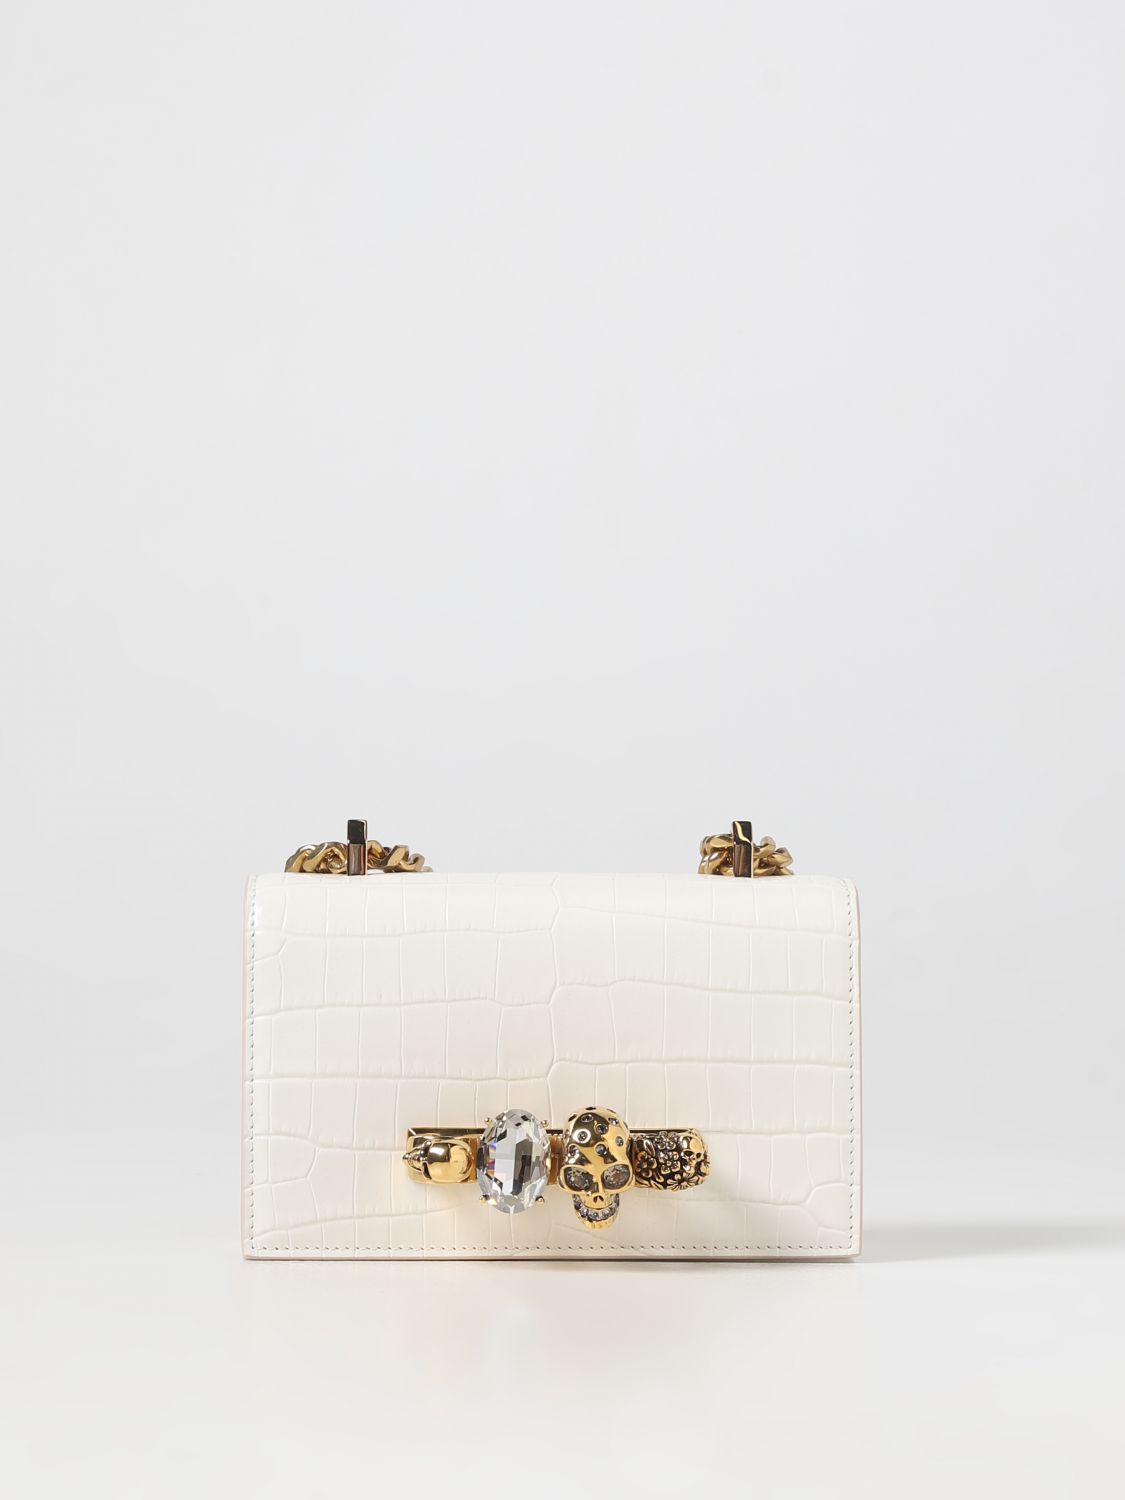 Crocodile Louis Vuitton Bags for Women - Vestiaire Collective